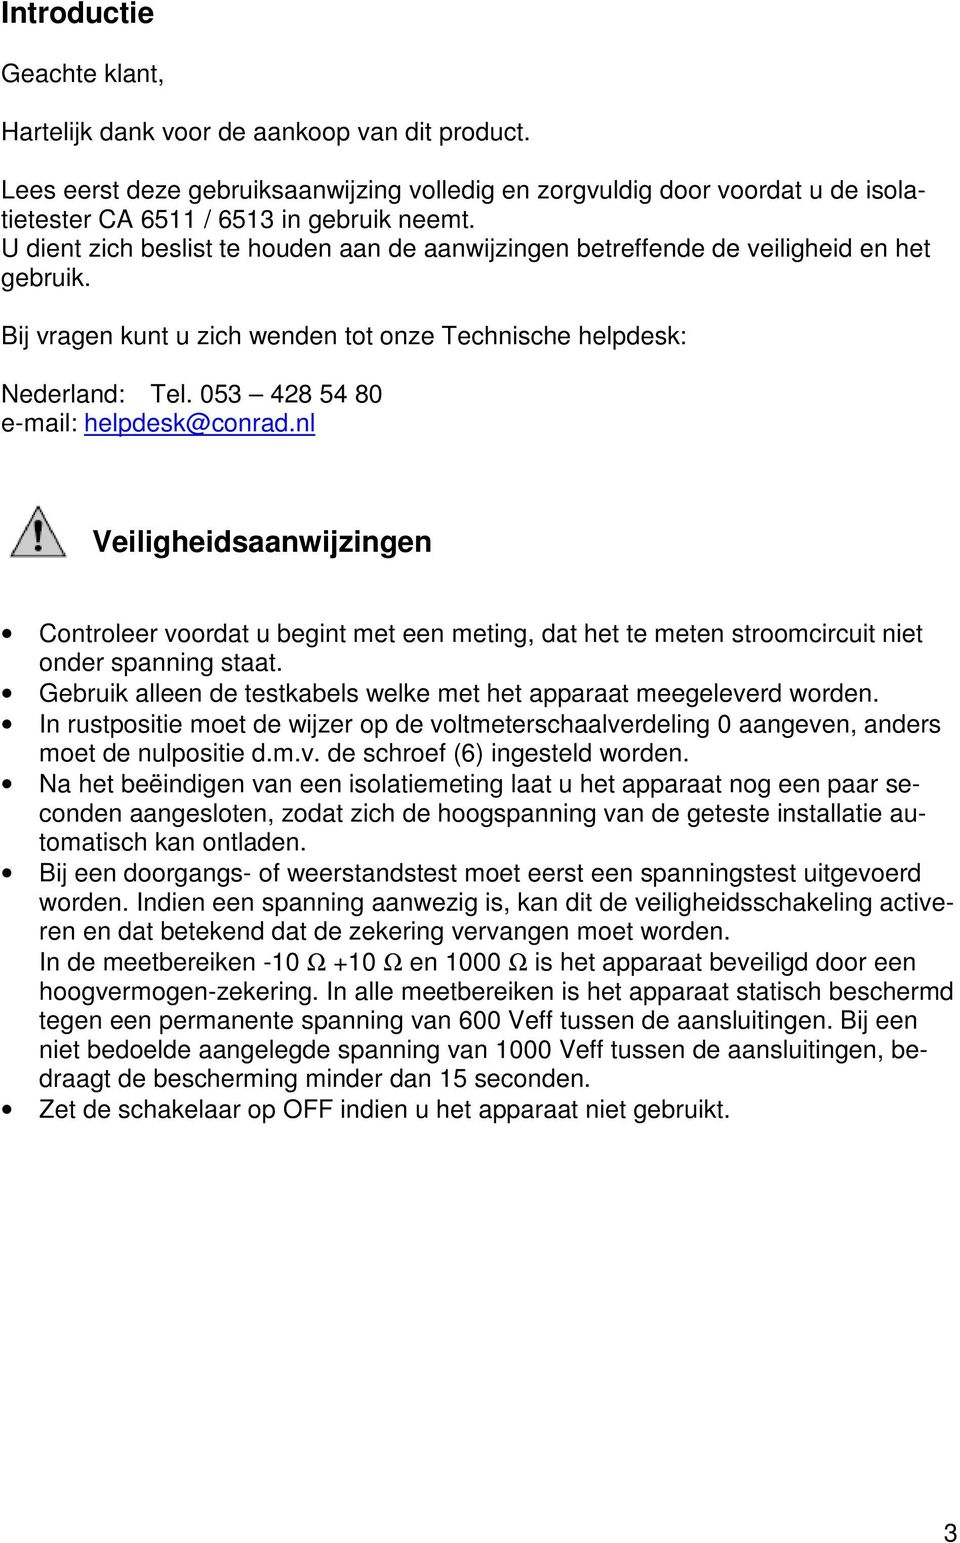 053 428 54 80 e-mail: helpdesk@conrad.nl Veiligheidsaanwijzingen Controleer voordat u begint met een meting, dat het te meten stroomcircuit niet onder spanning staat.